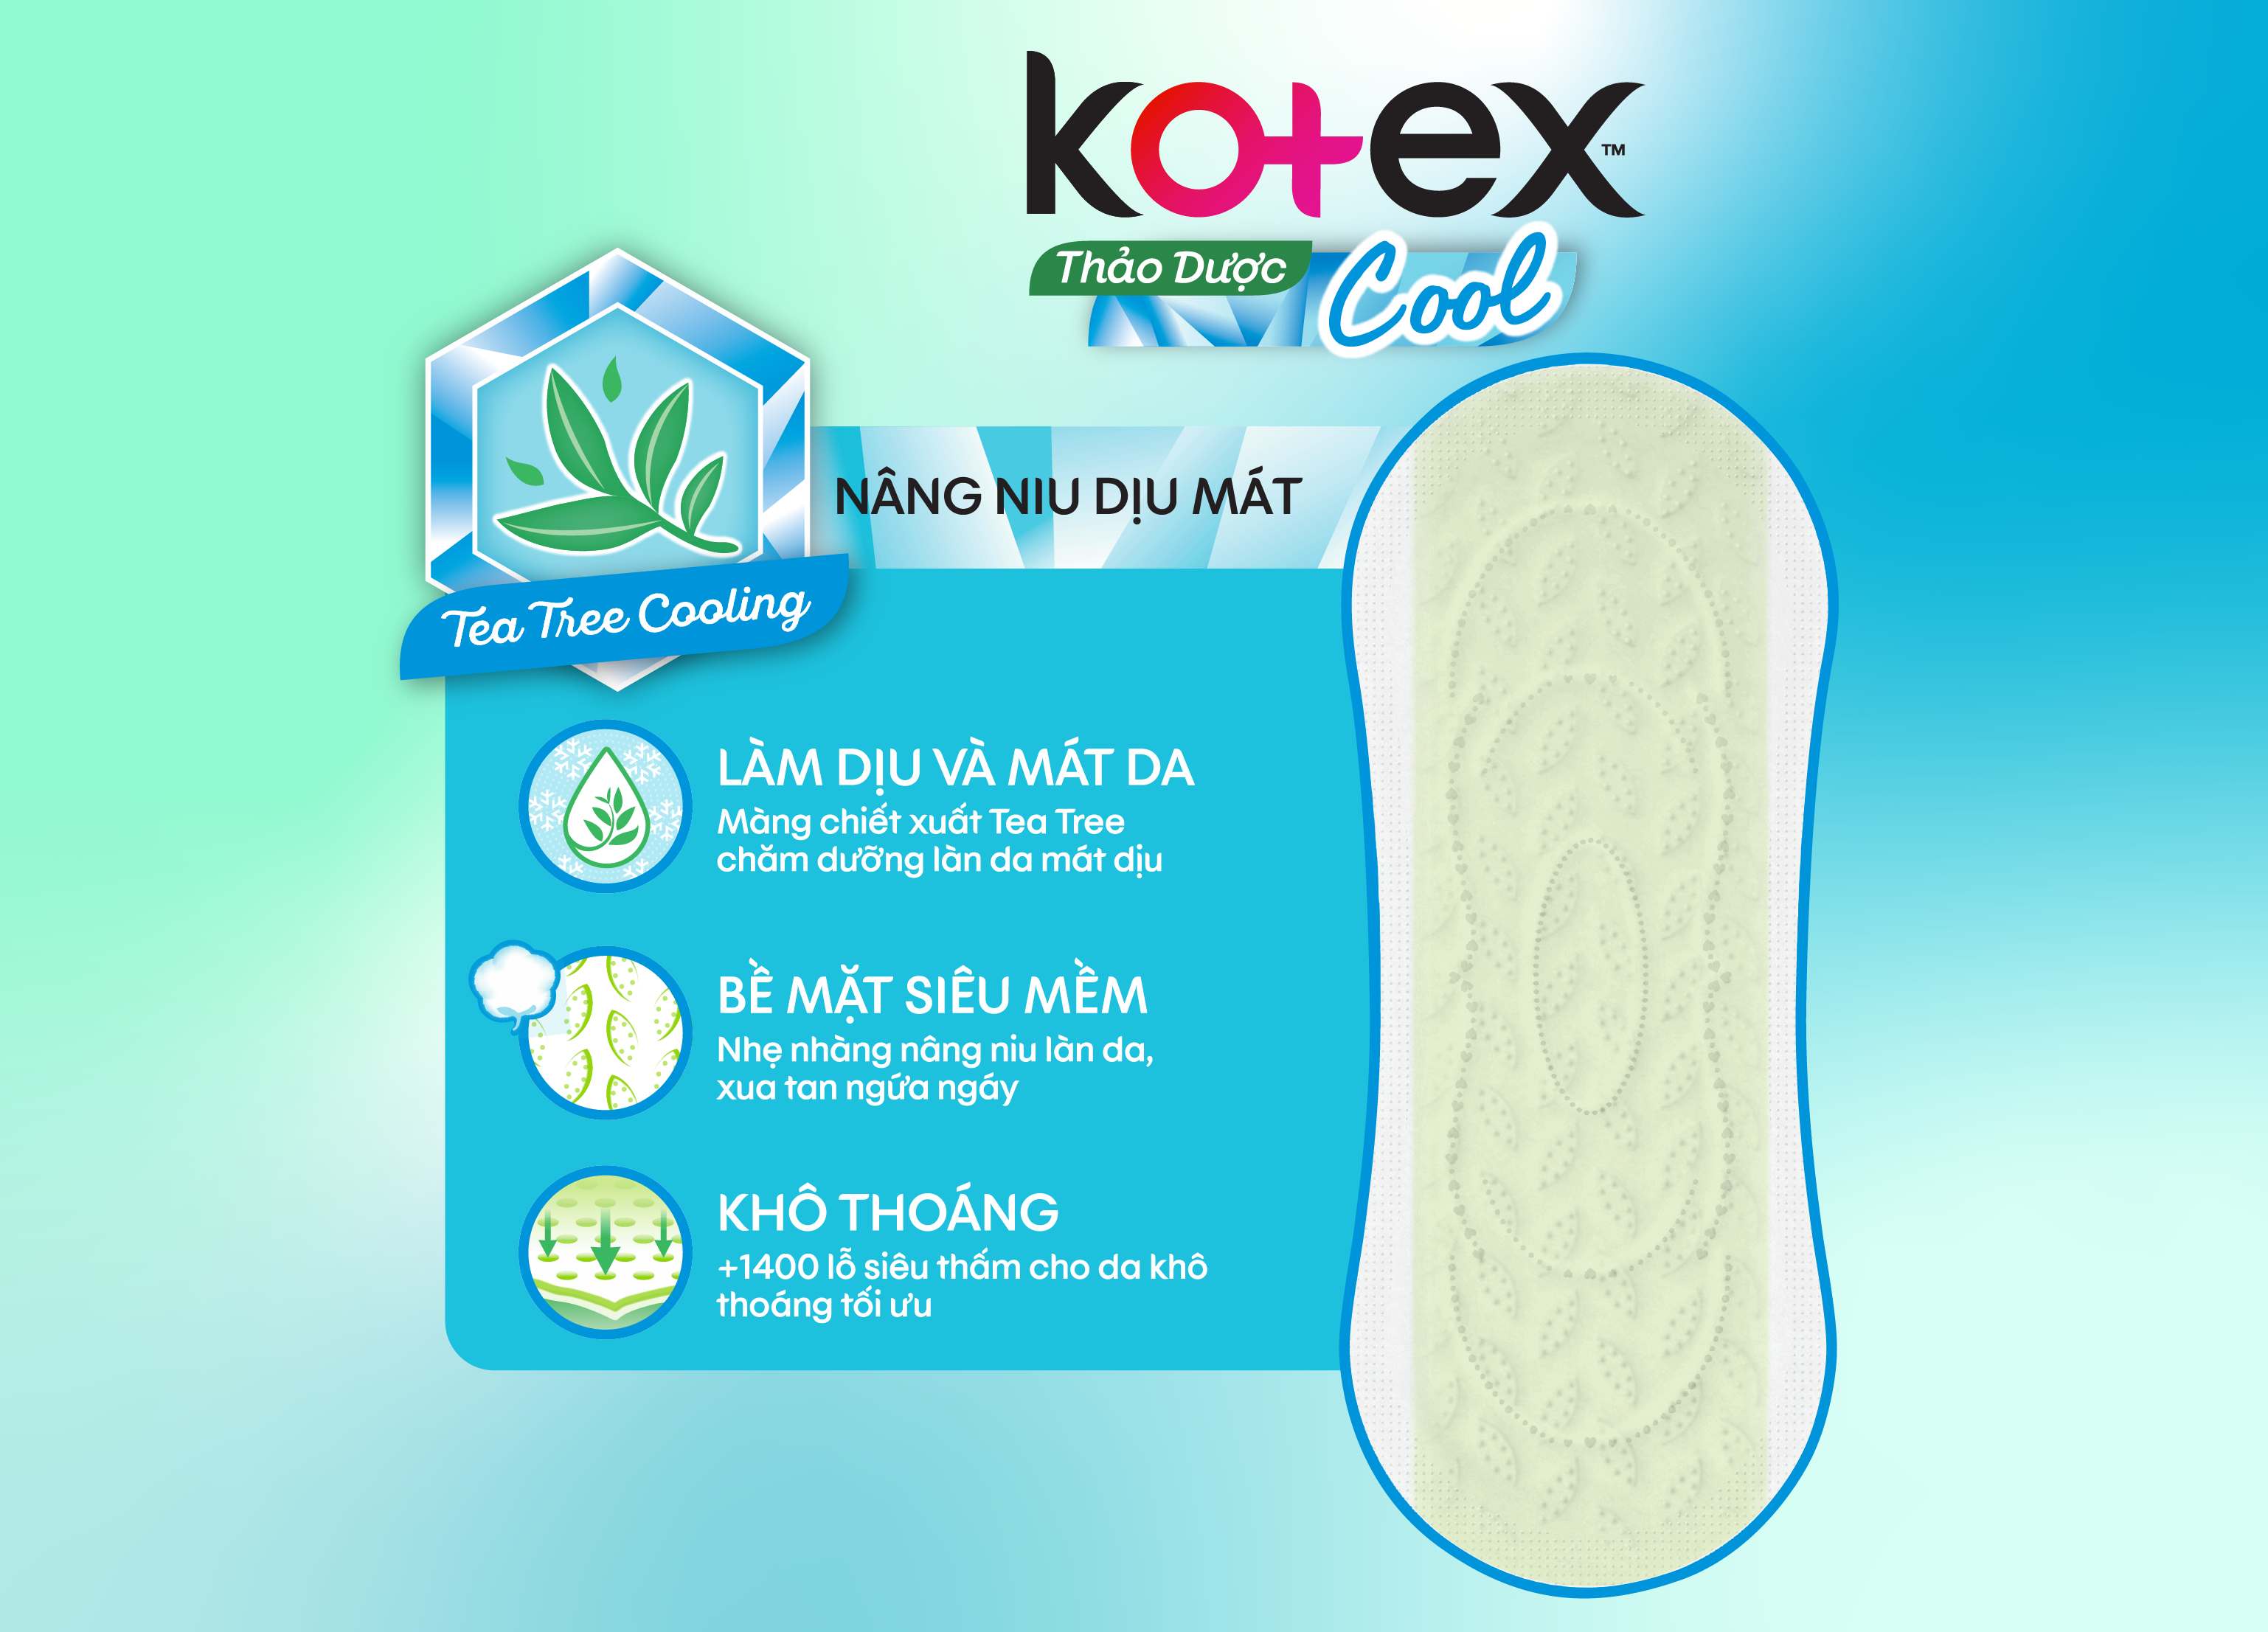 Băng vệ sinh mát lạnh từ thương hiệu Kotex có nhiều ưu điểm nổi bật nên được các bạn nữ yêu thích lựa chọn